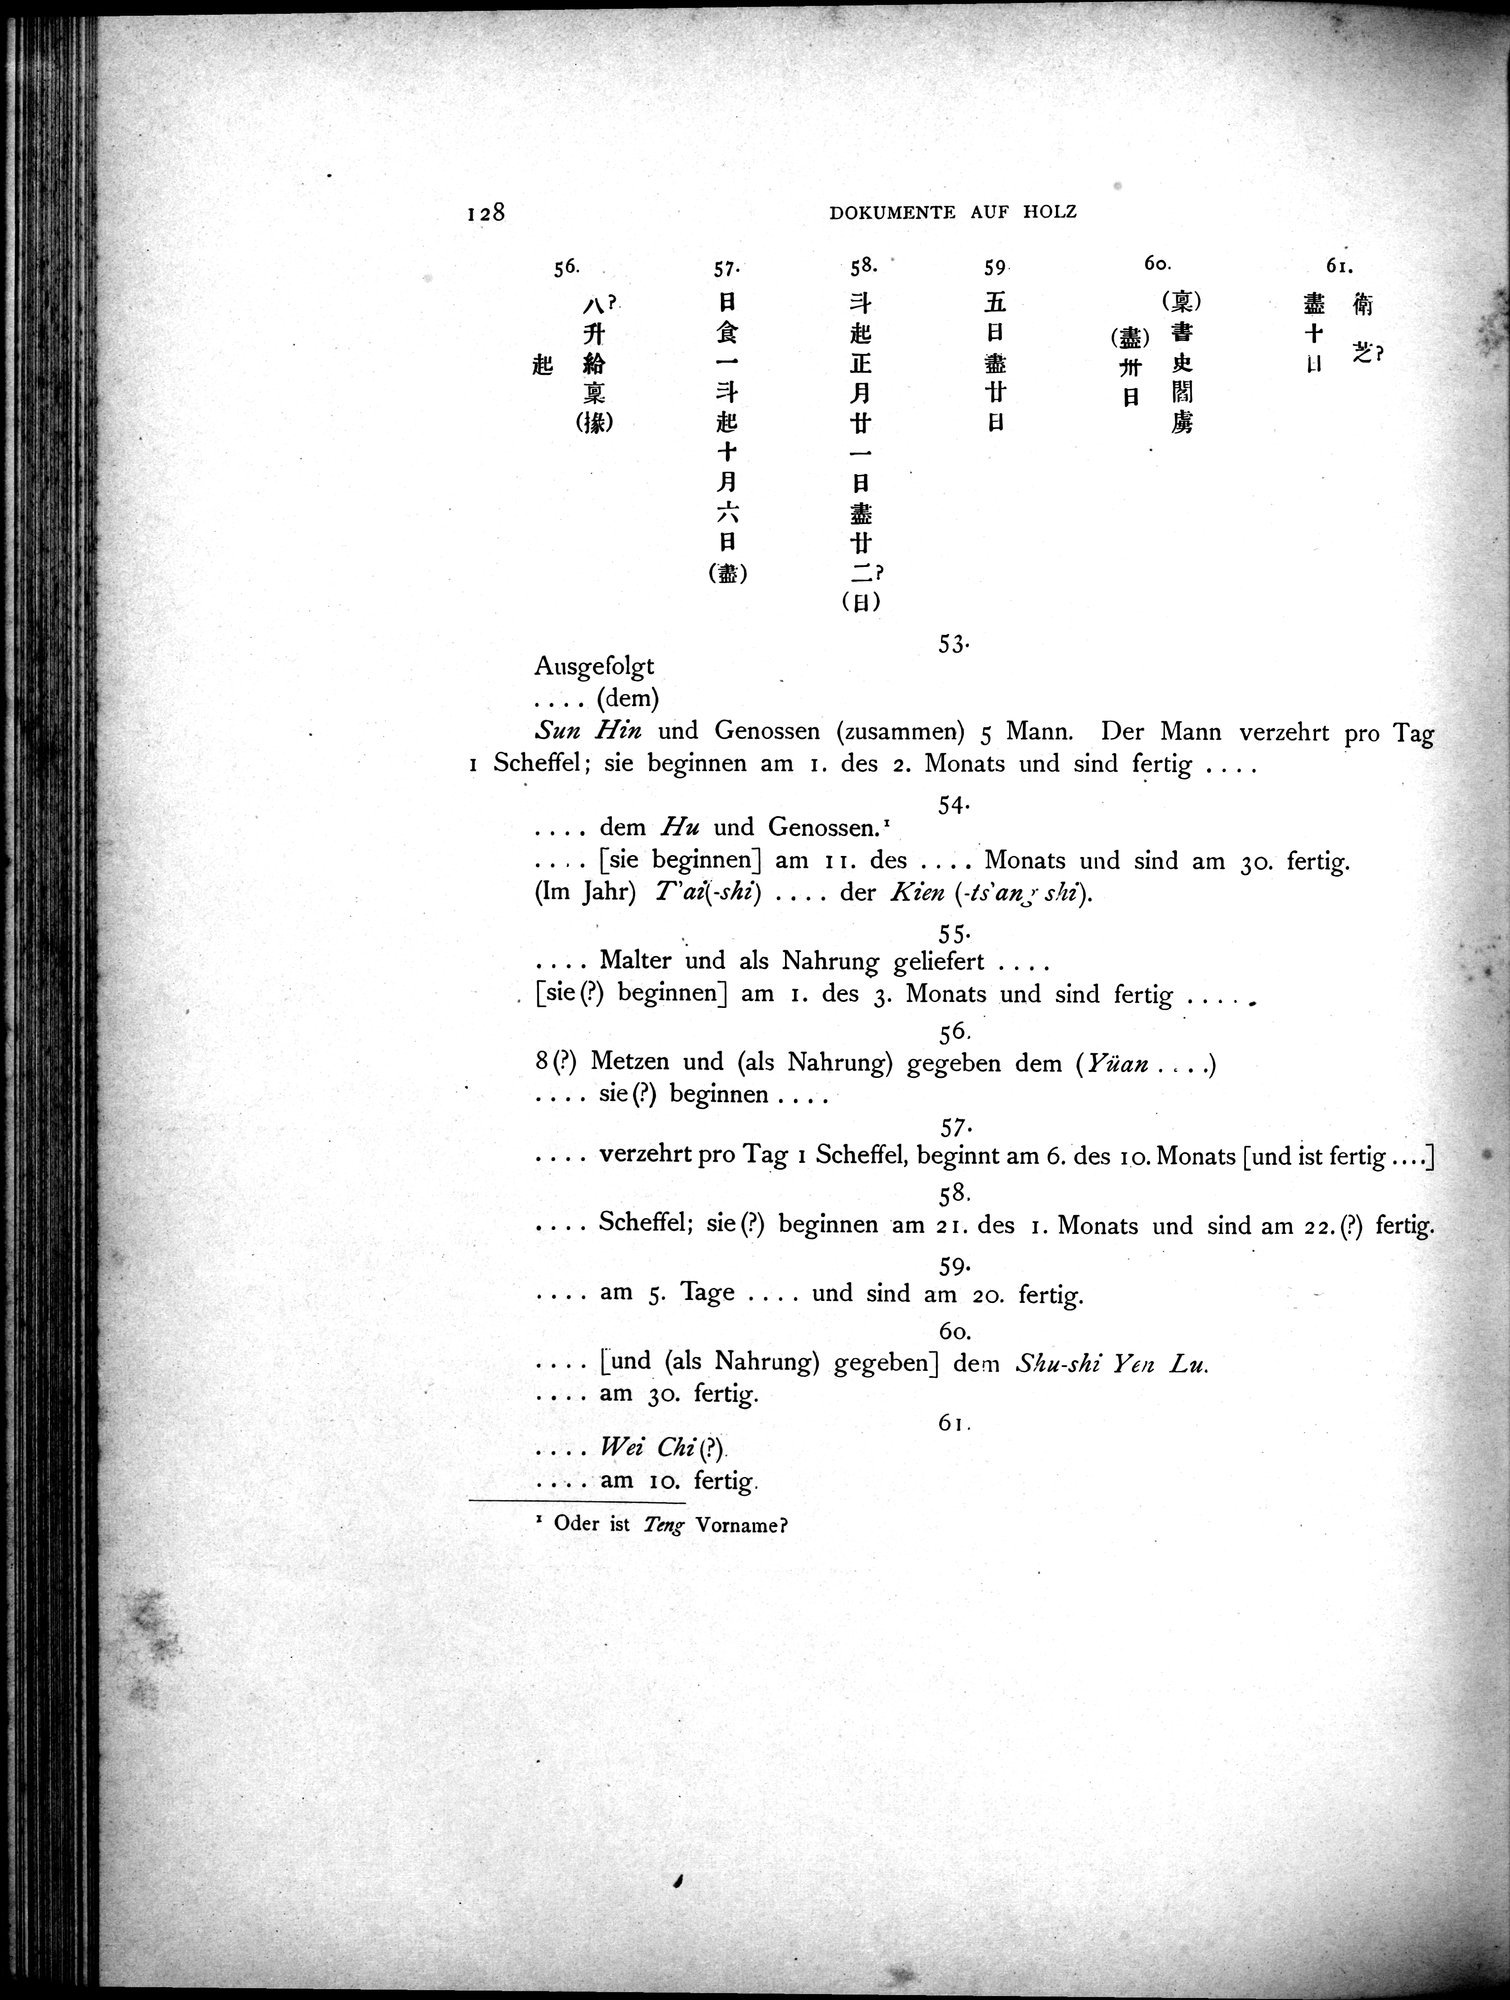 Die Chinesischen Handschriften- und sonstigen Kleinfunde Sven Hedins in Lou-lan : vol.1 / Page 152 (Grayscale High Resolution Image)